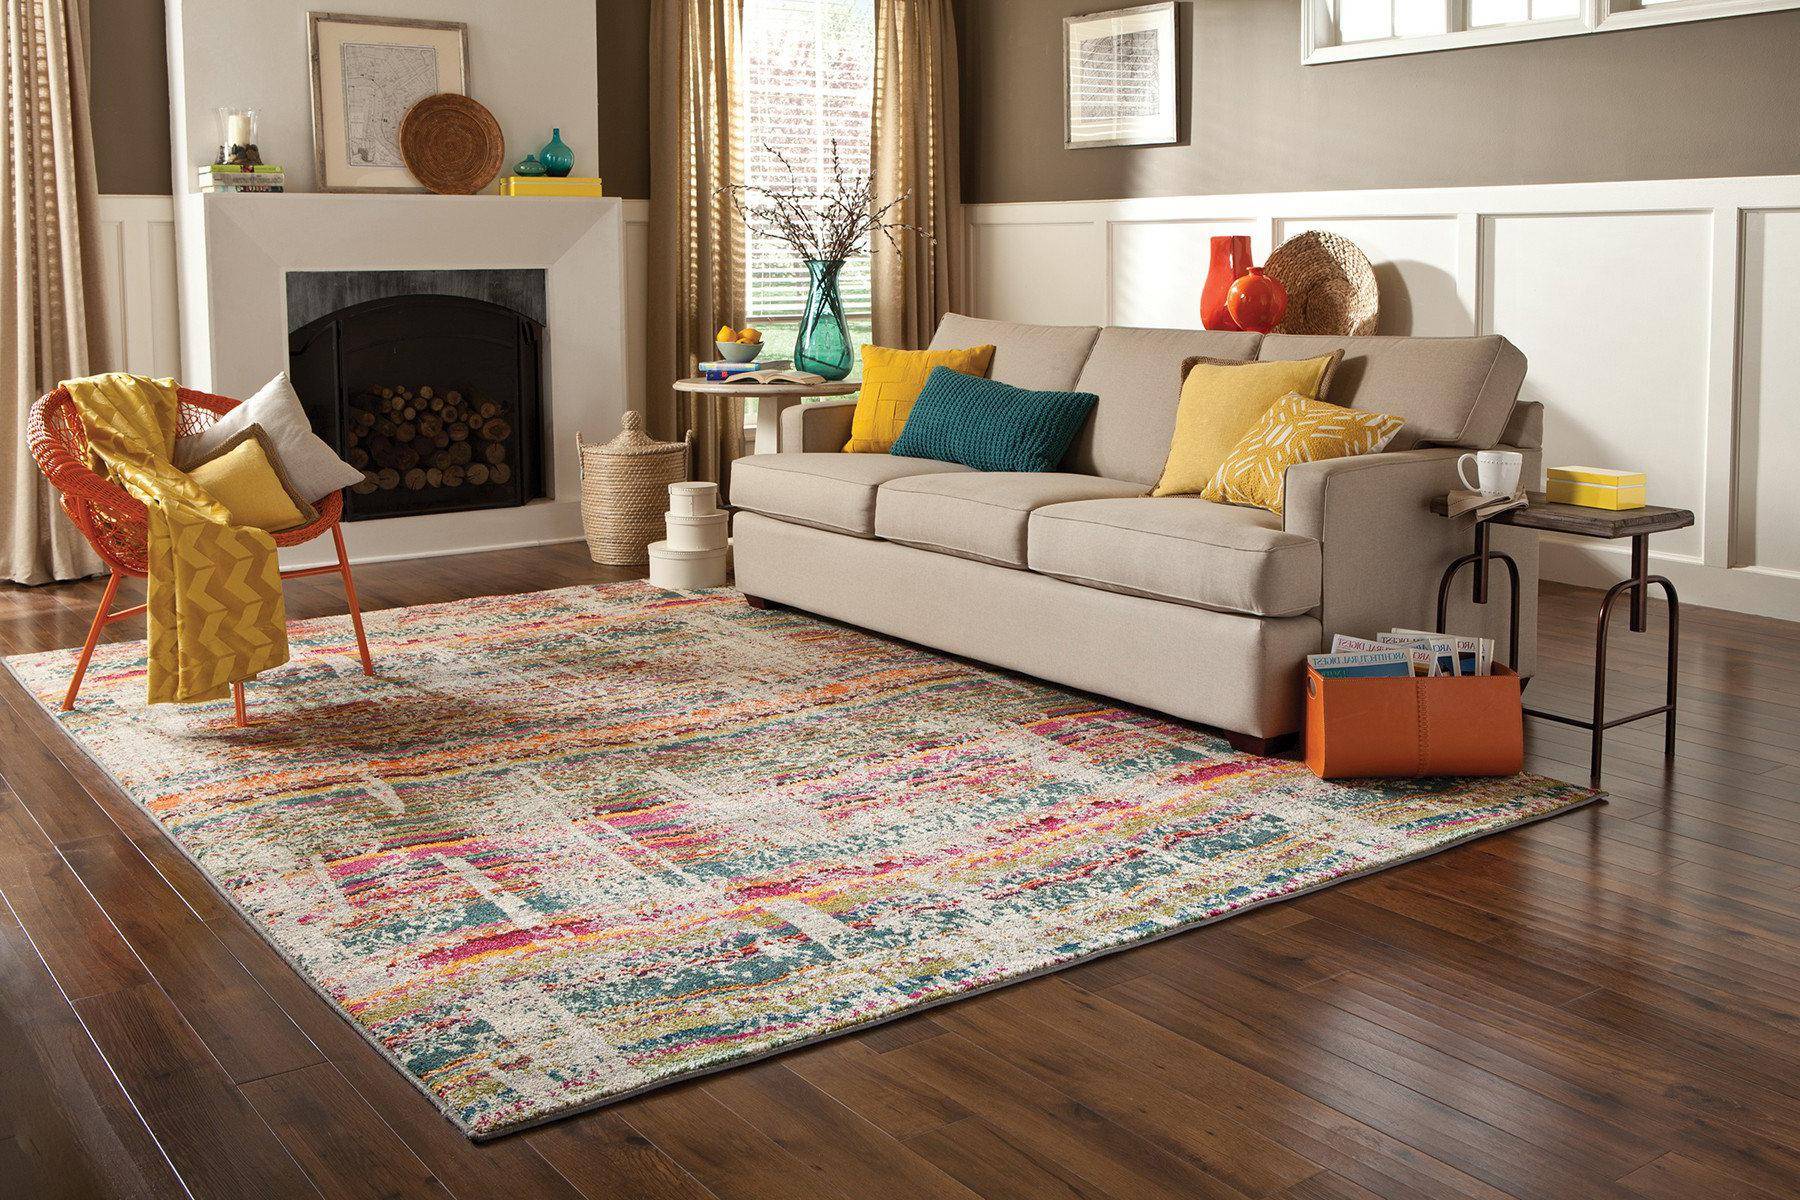 Как выбрать ковер на пол в гостиную - виды ковров и паласов, критерии выбора